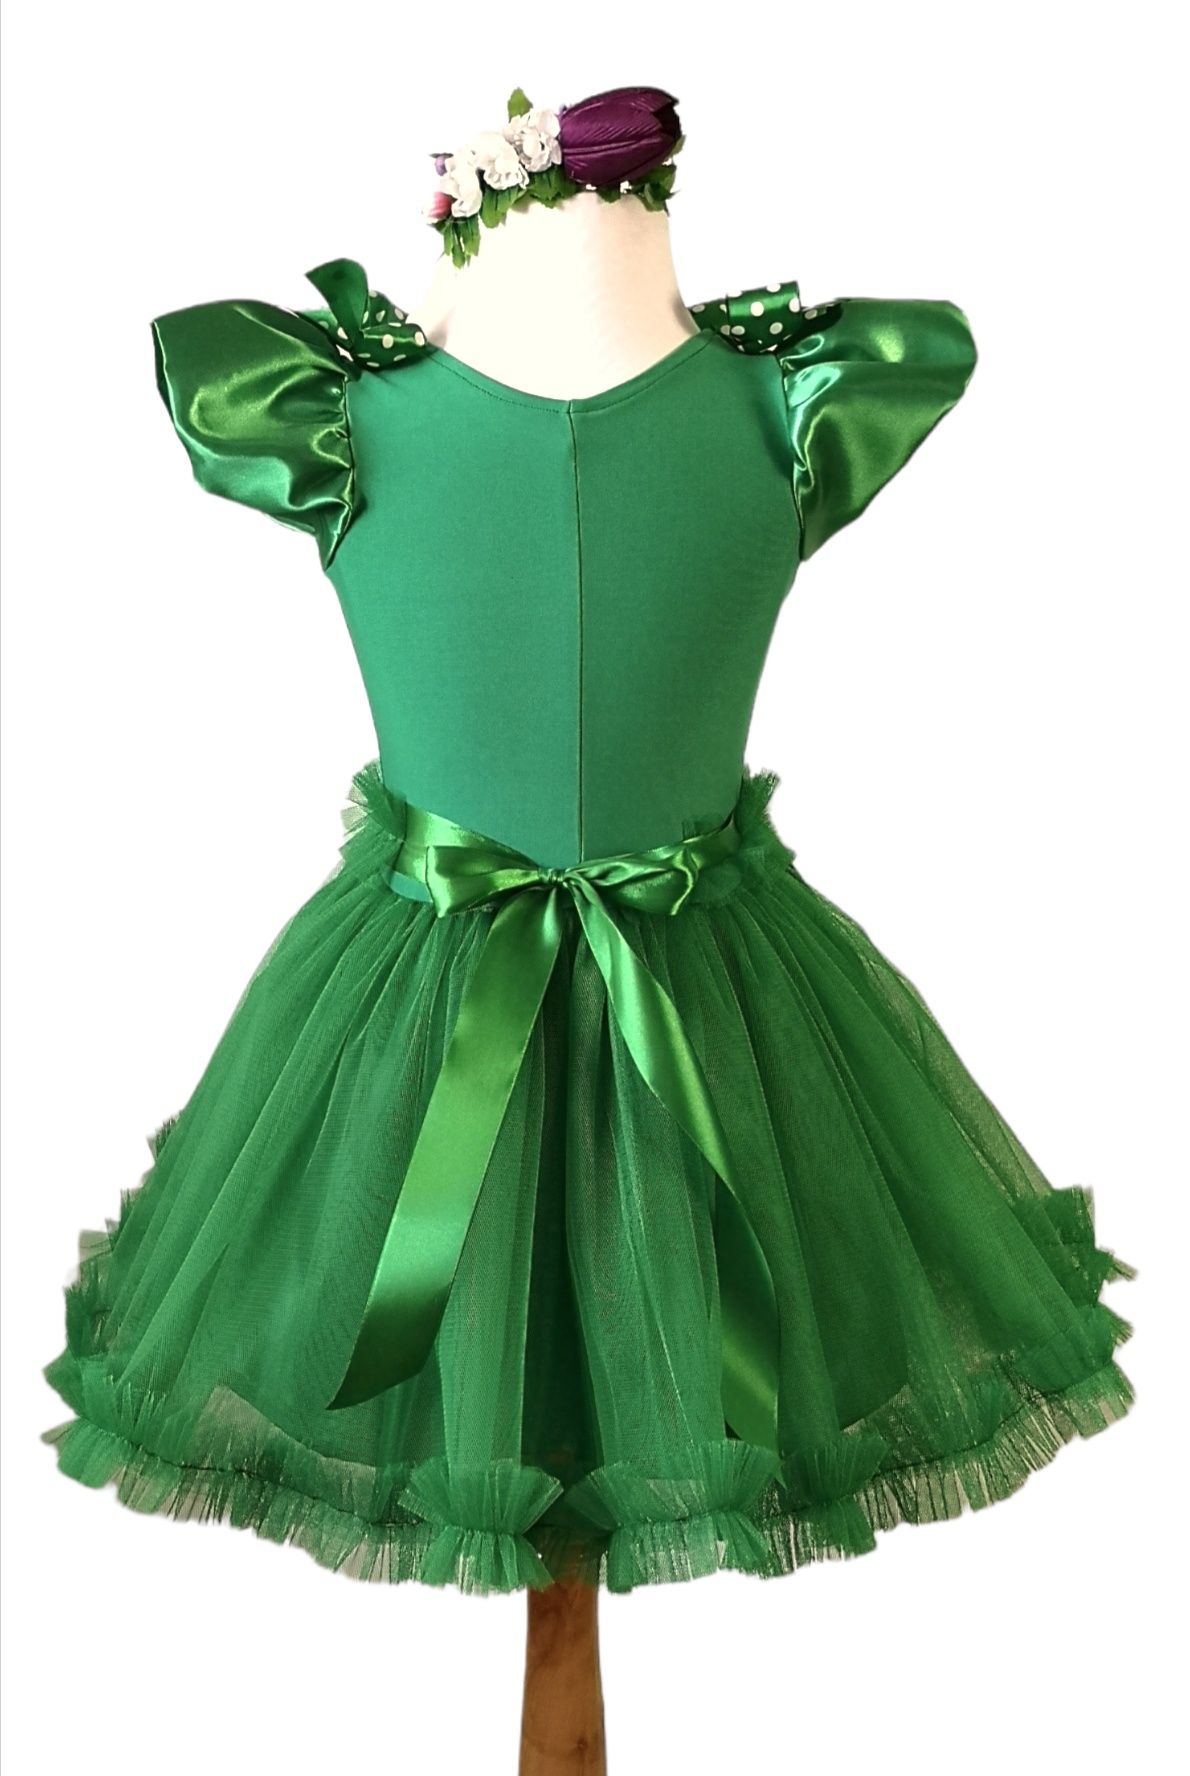 Costum zana primavara  rochie verde party carnaval halloween